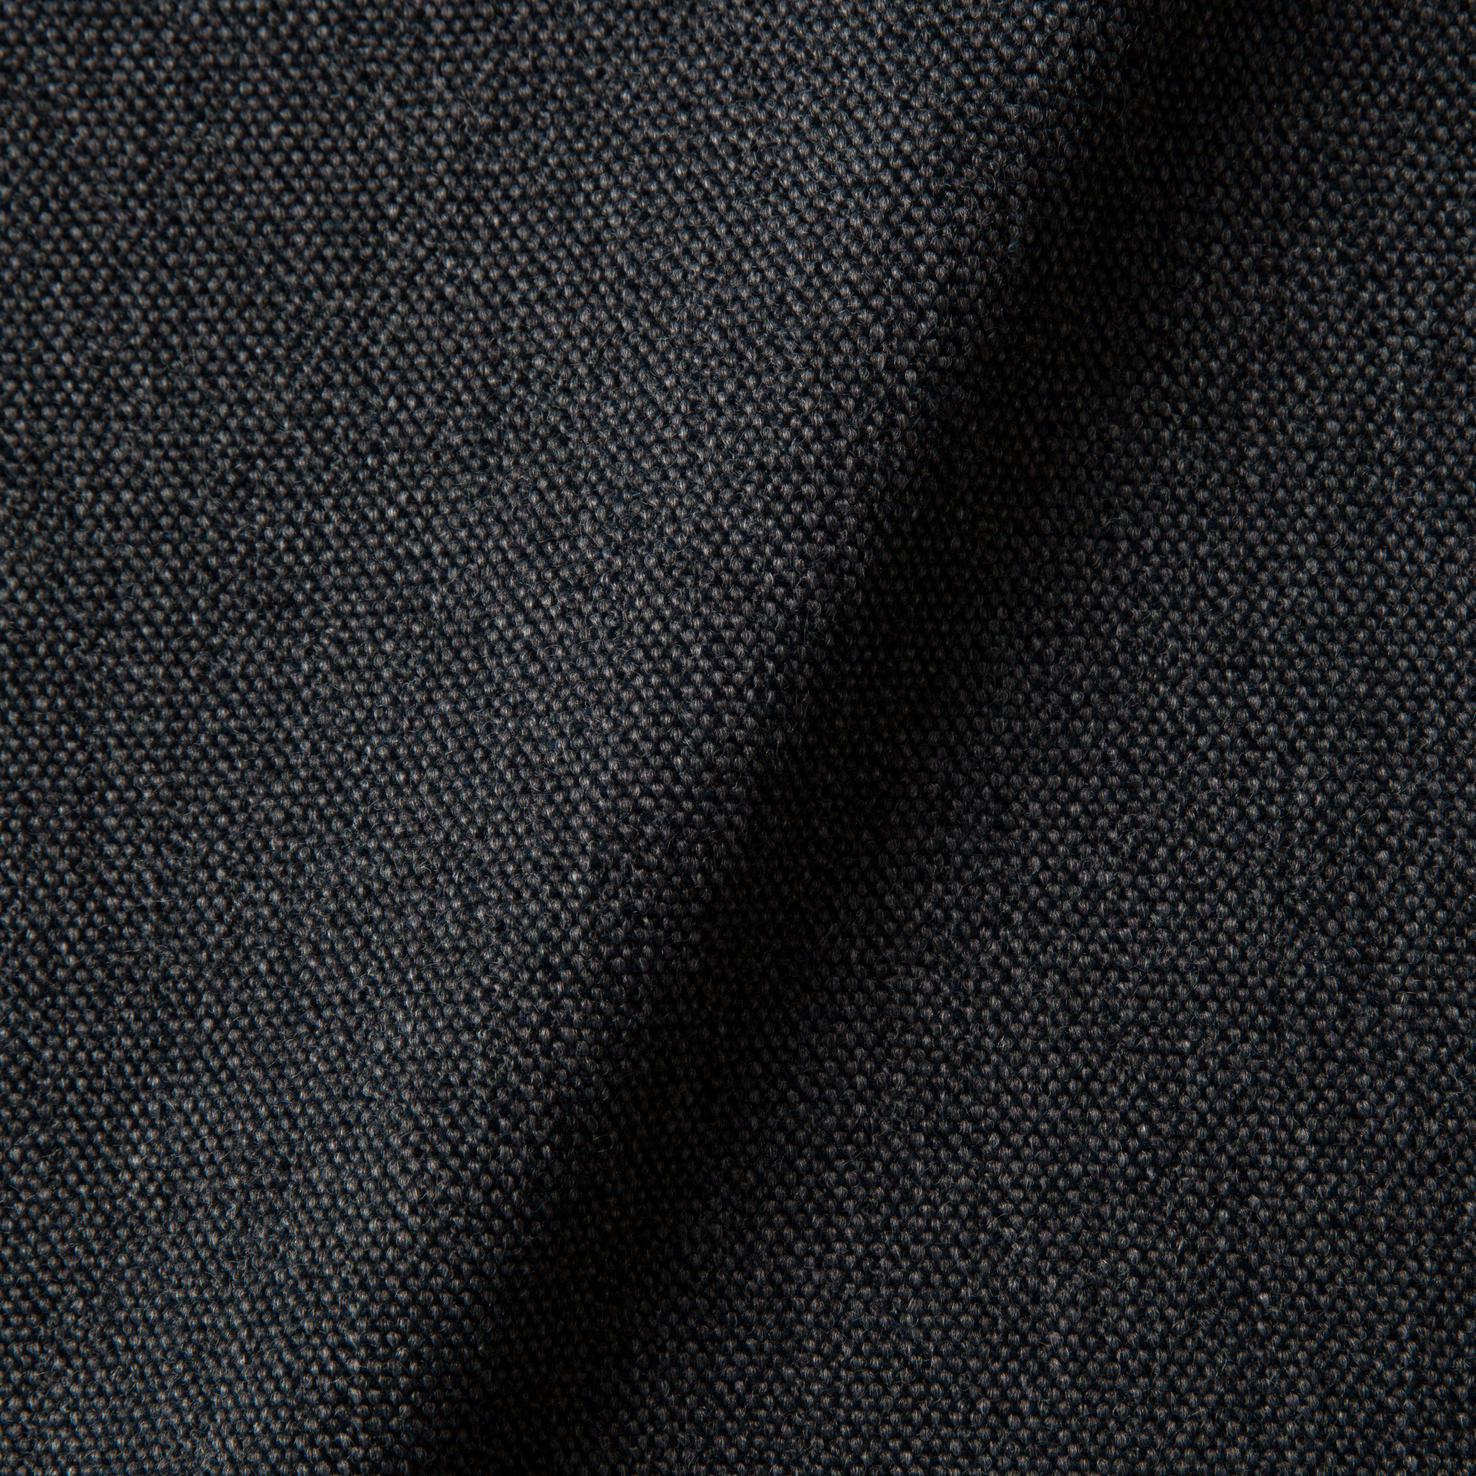 Fabric sample Justo Bazalt grey